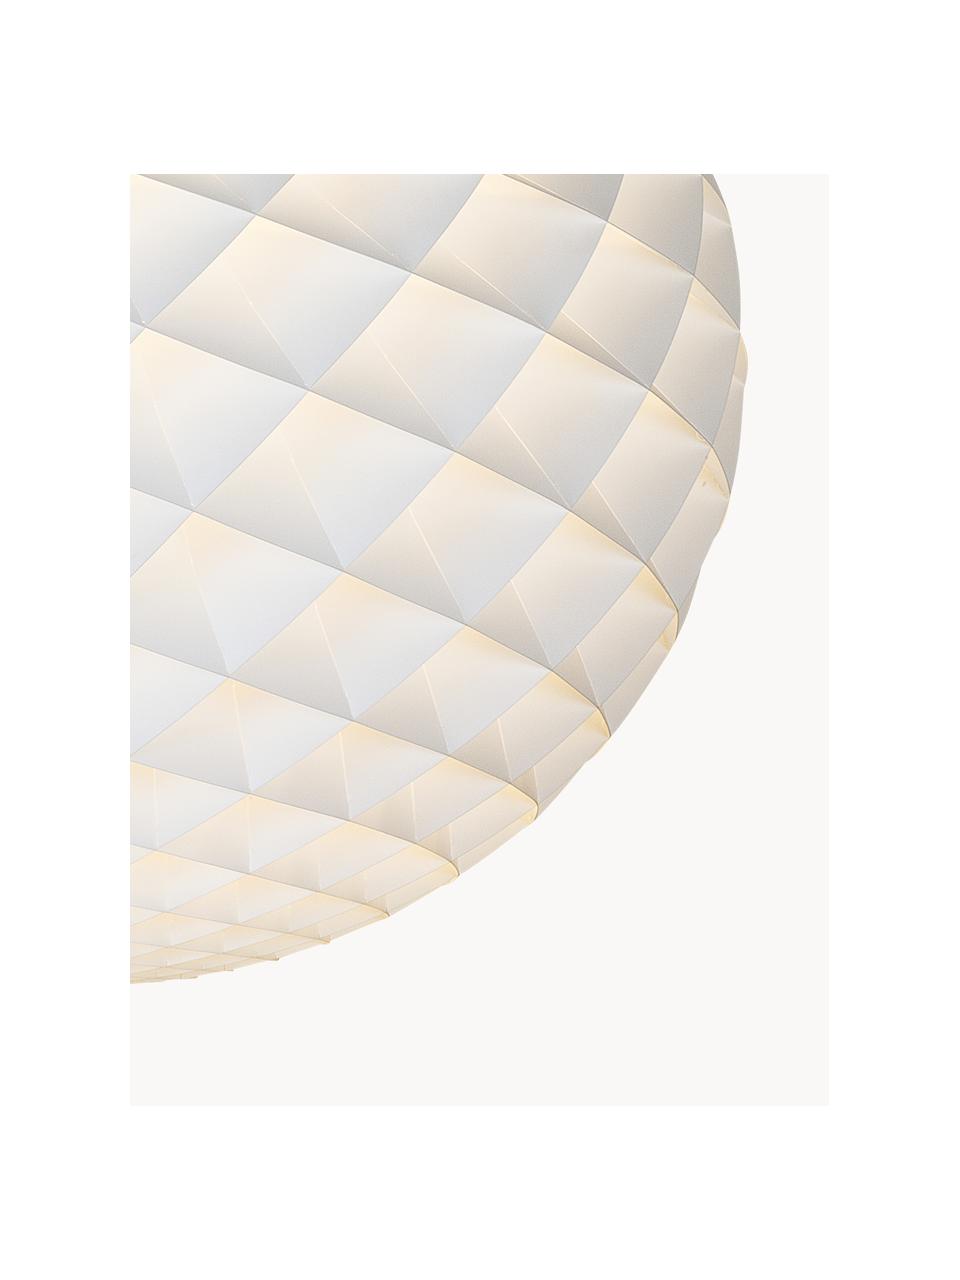 Pendelleuchte Patera, verschiedene Grössen, Lampenschirm: PVC-Folie, Baldachin: Aluminium, verchromt, Acr, Ohne Leuchtmittel, Ø 30 x H 31 cm